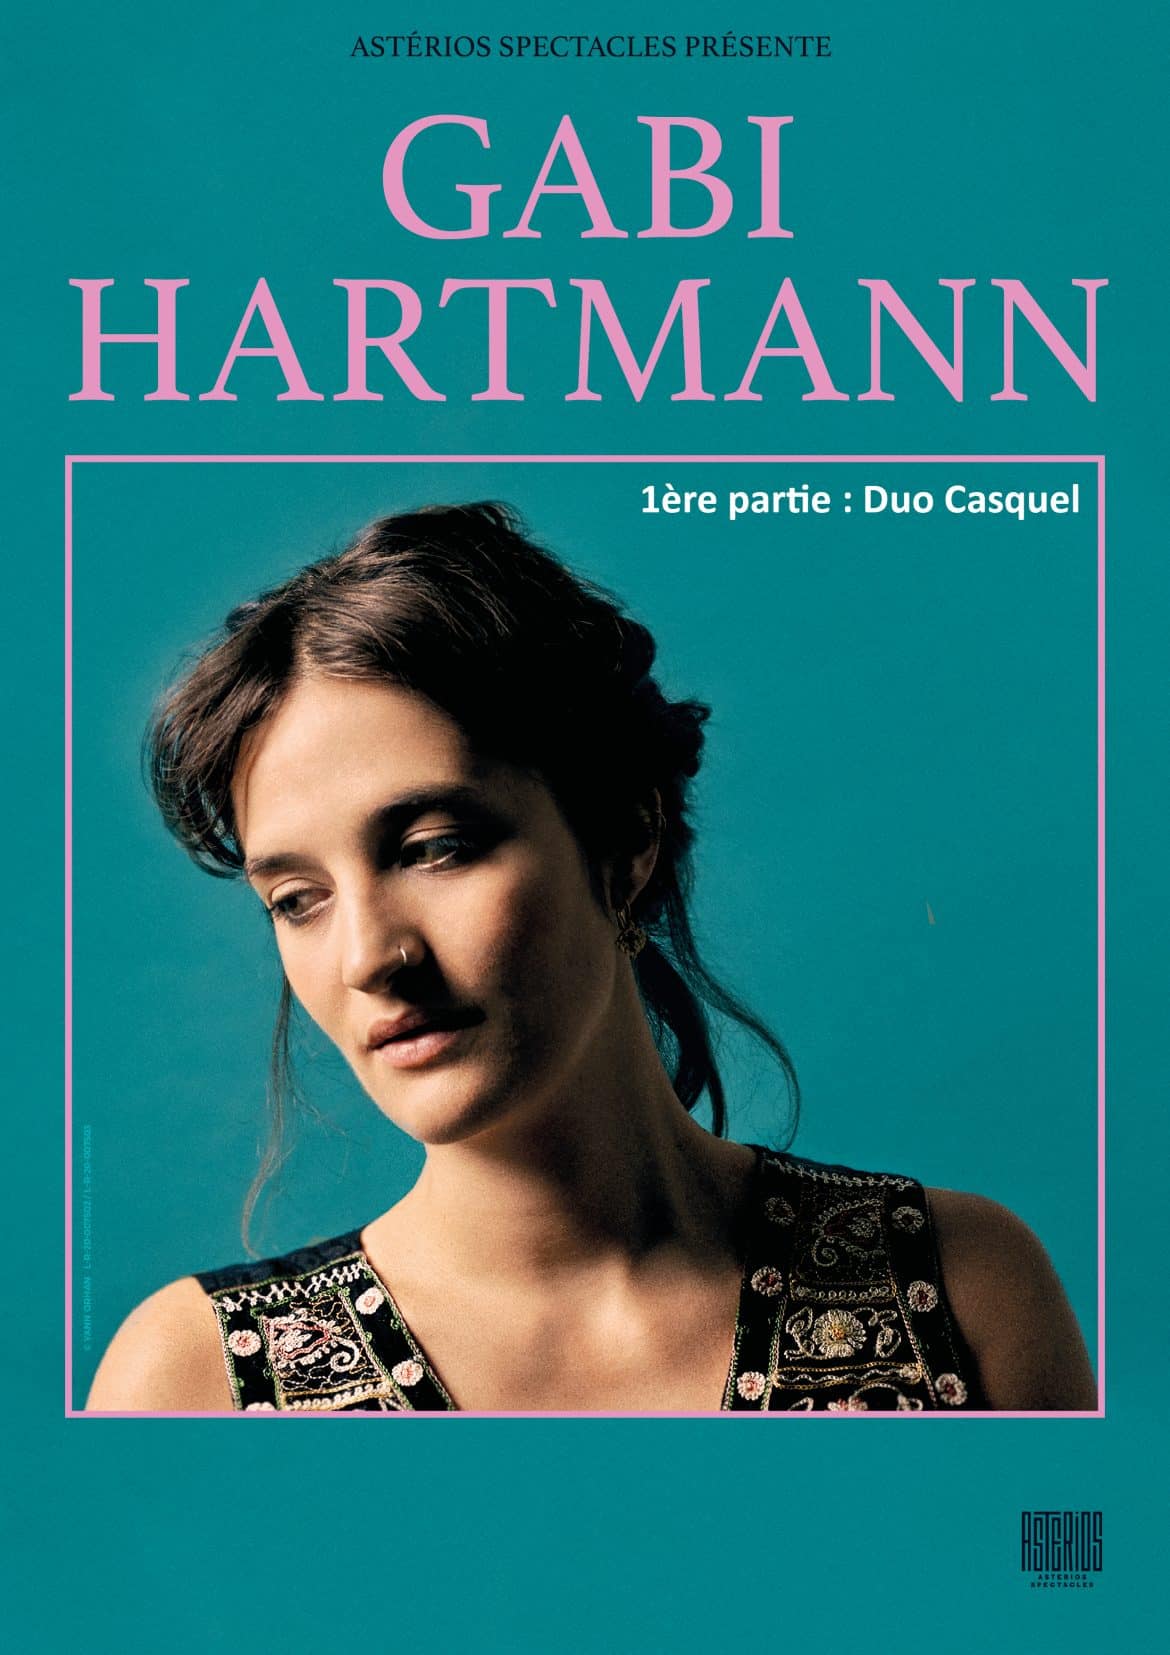 Concert Gabi Hartmann